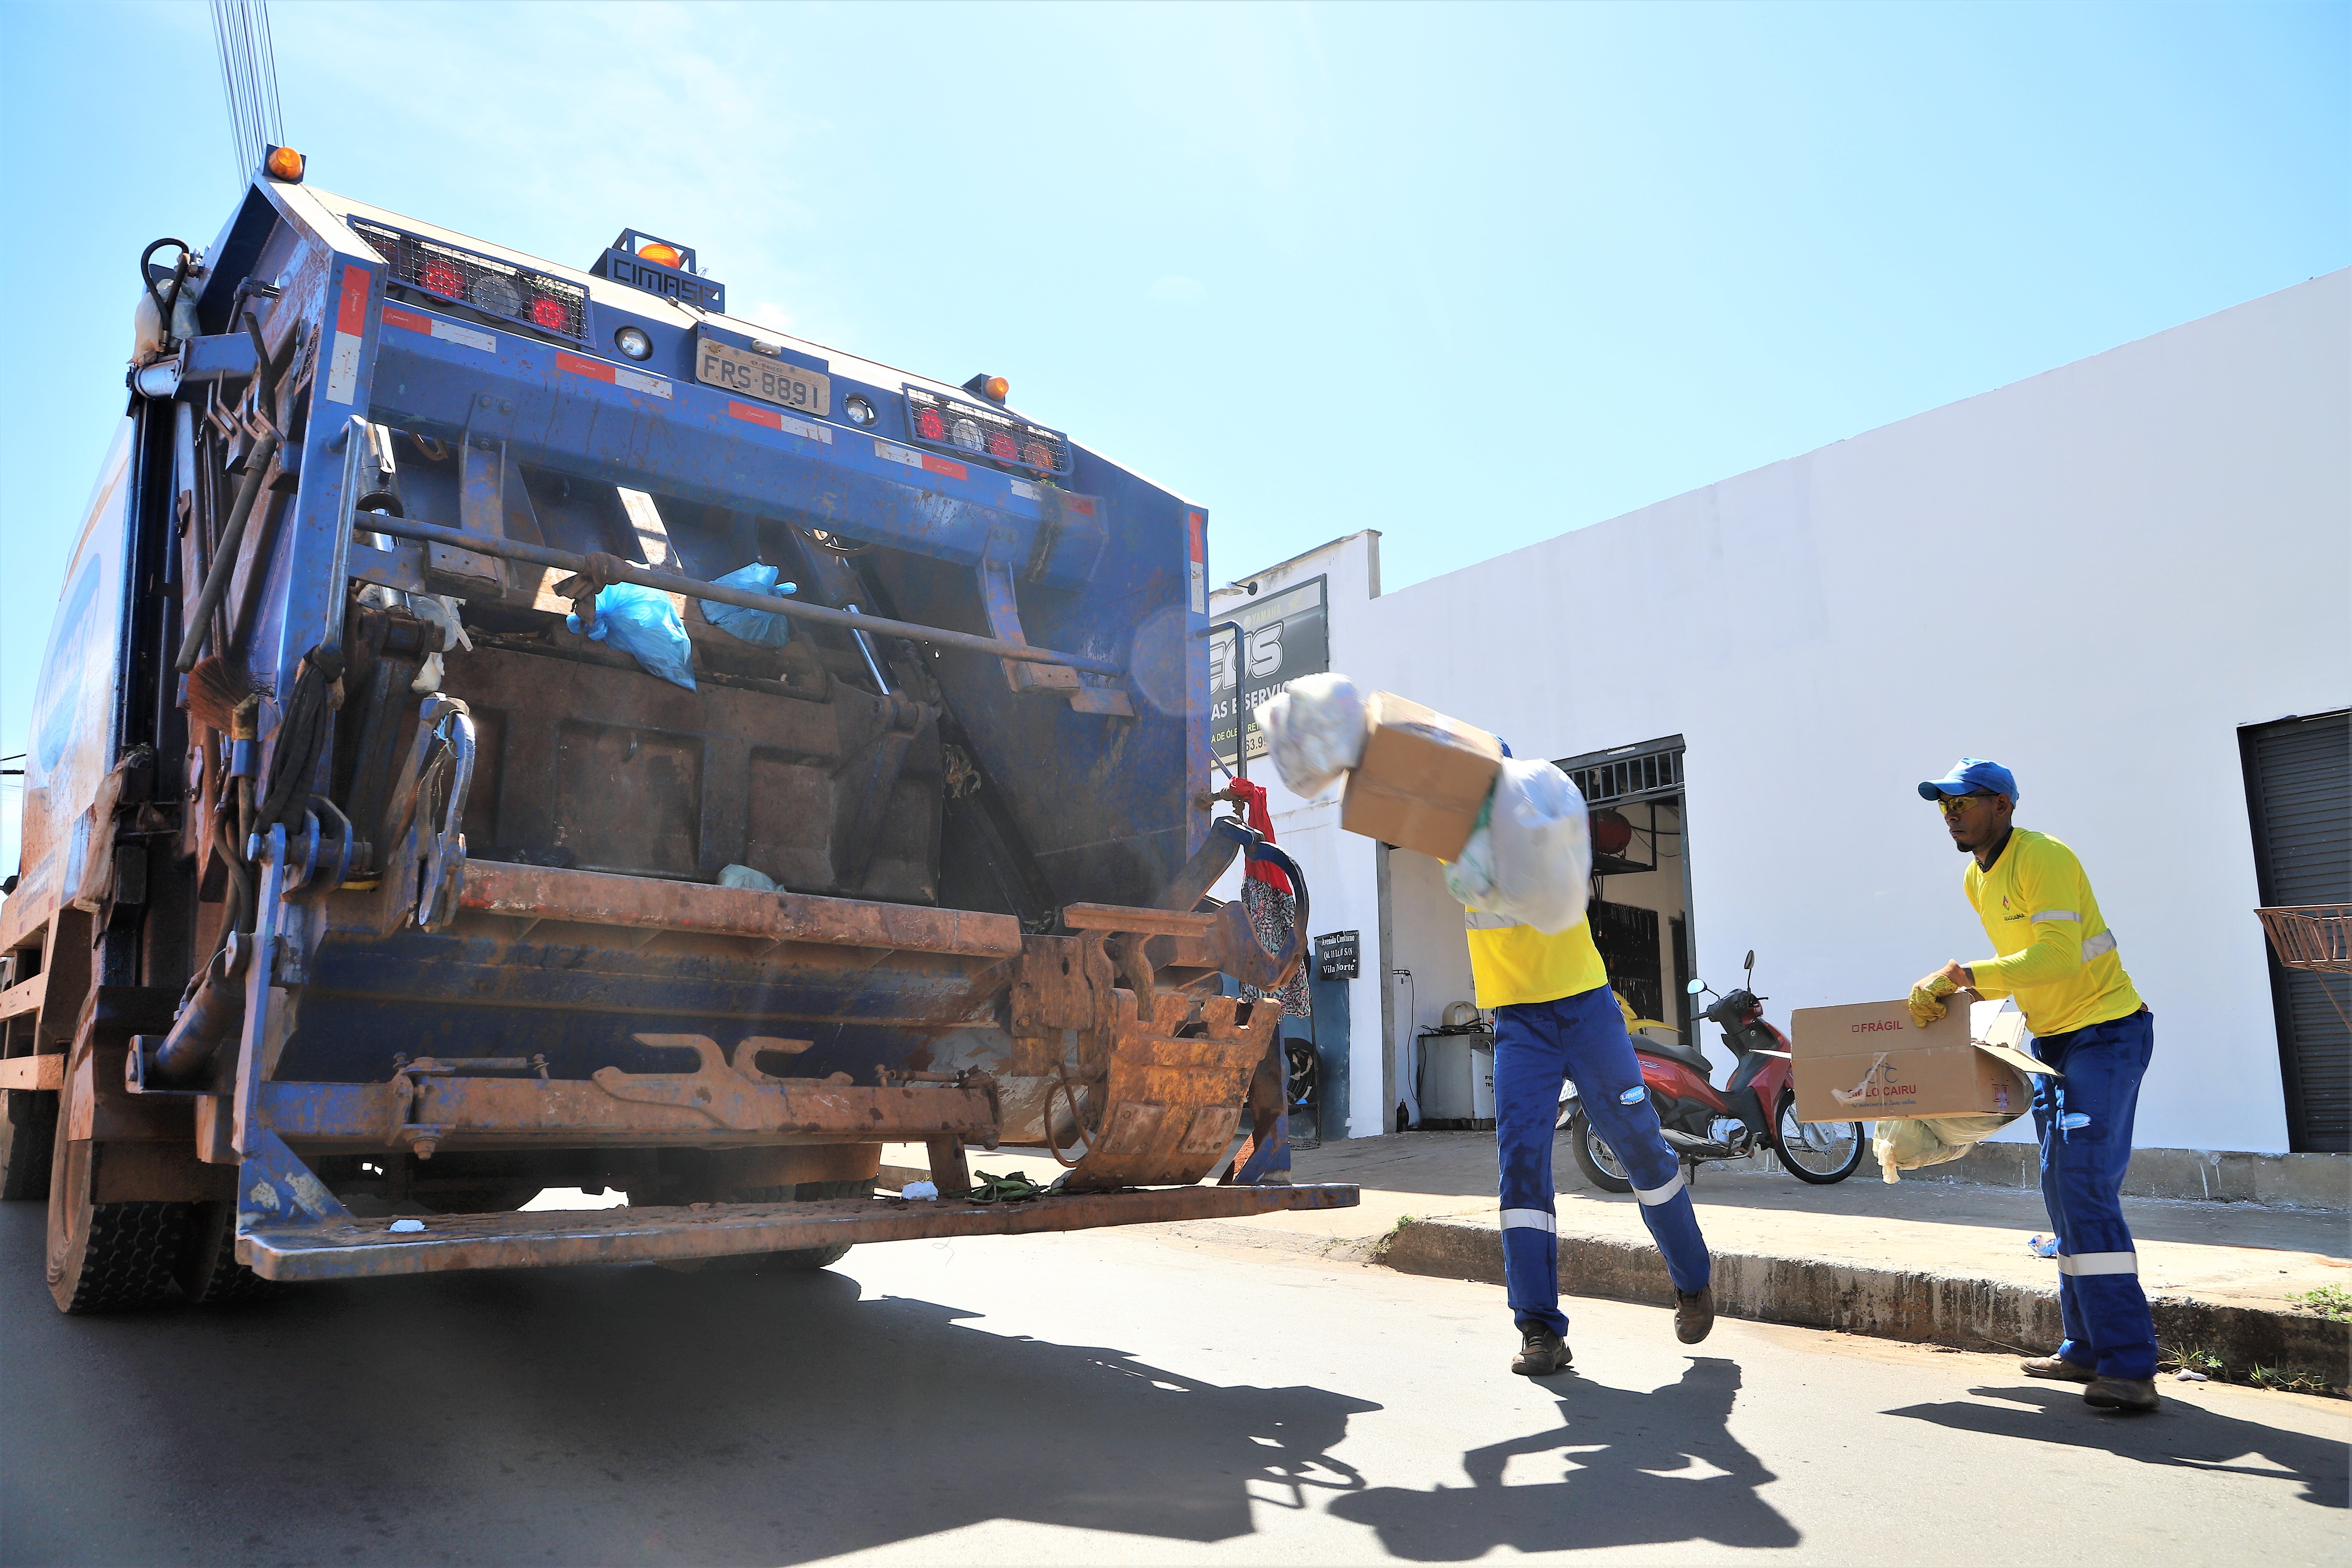 Em Araguaína, o maior valor de taxa de lixo é de R$ 344,00, voltado para grandes empresas que exigem muito recolhimento de resíduos. No entanto, a grande maioria dos contribuintes deve pagar o valor médio de R$ 100,00.